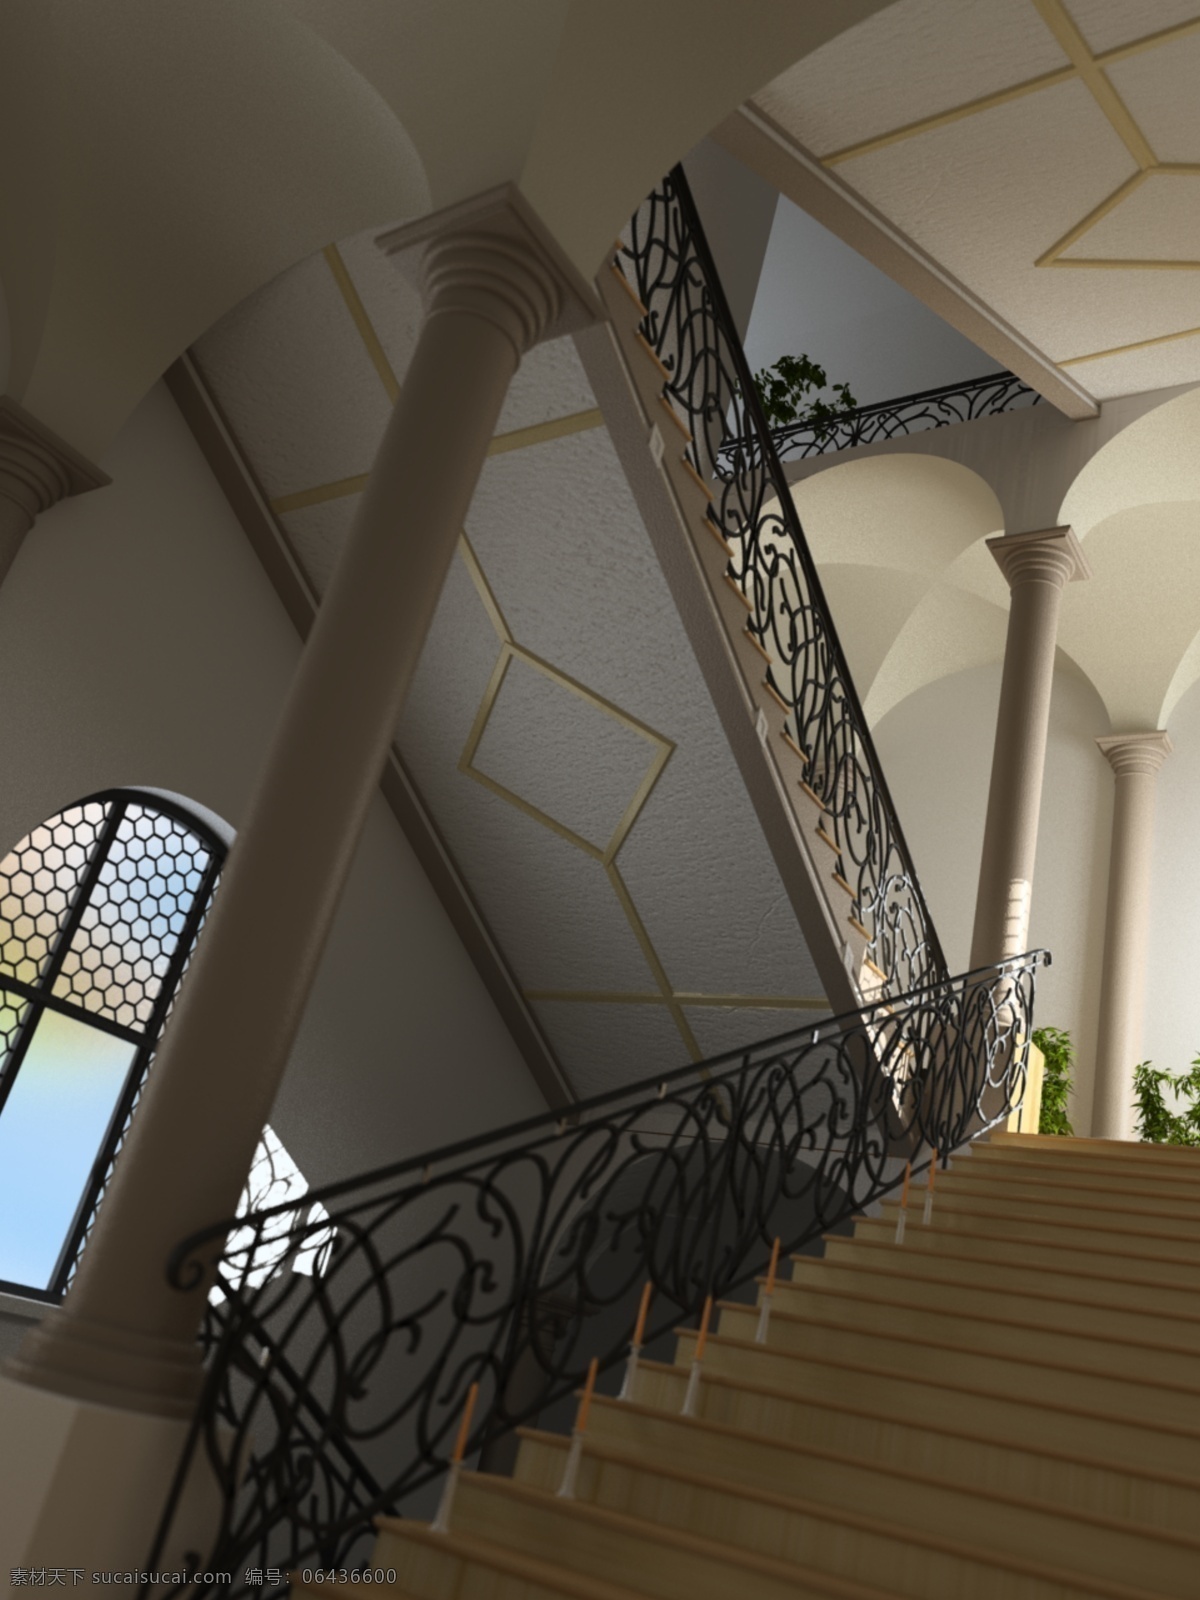 转角 楼梯 整体 模型 带 贴图 高质量 家居室内 转角楼梯 3d模型素材 家具模型